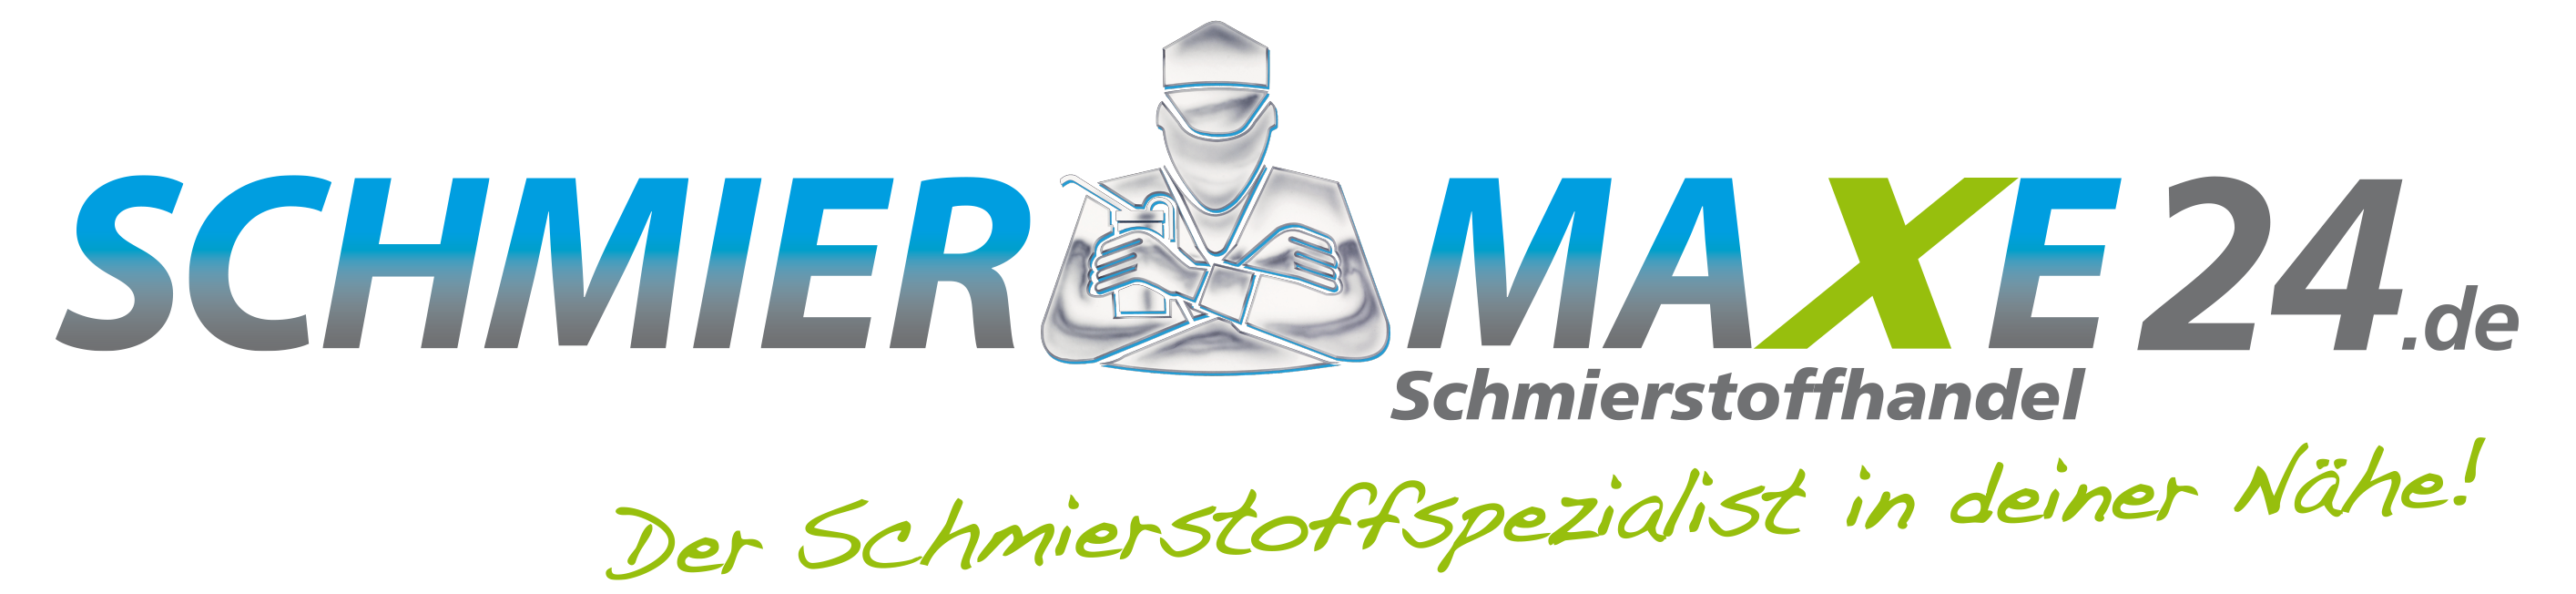 logo schmiermaxe24.de